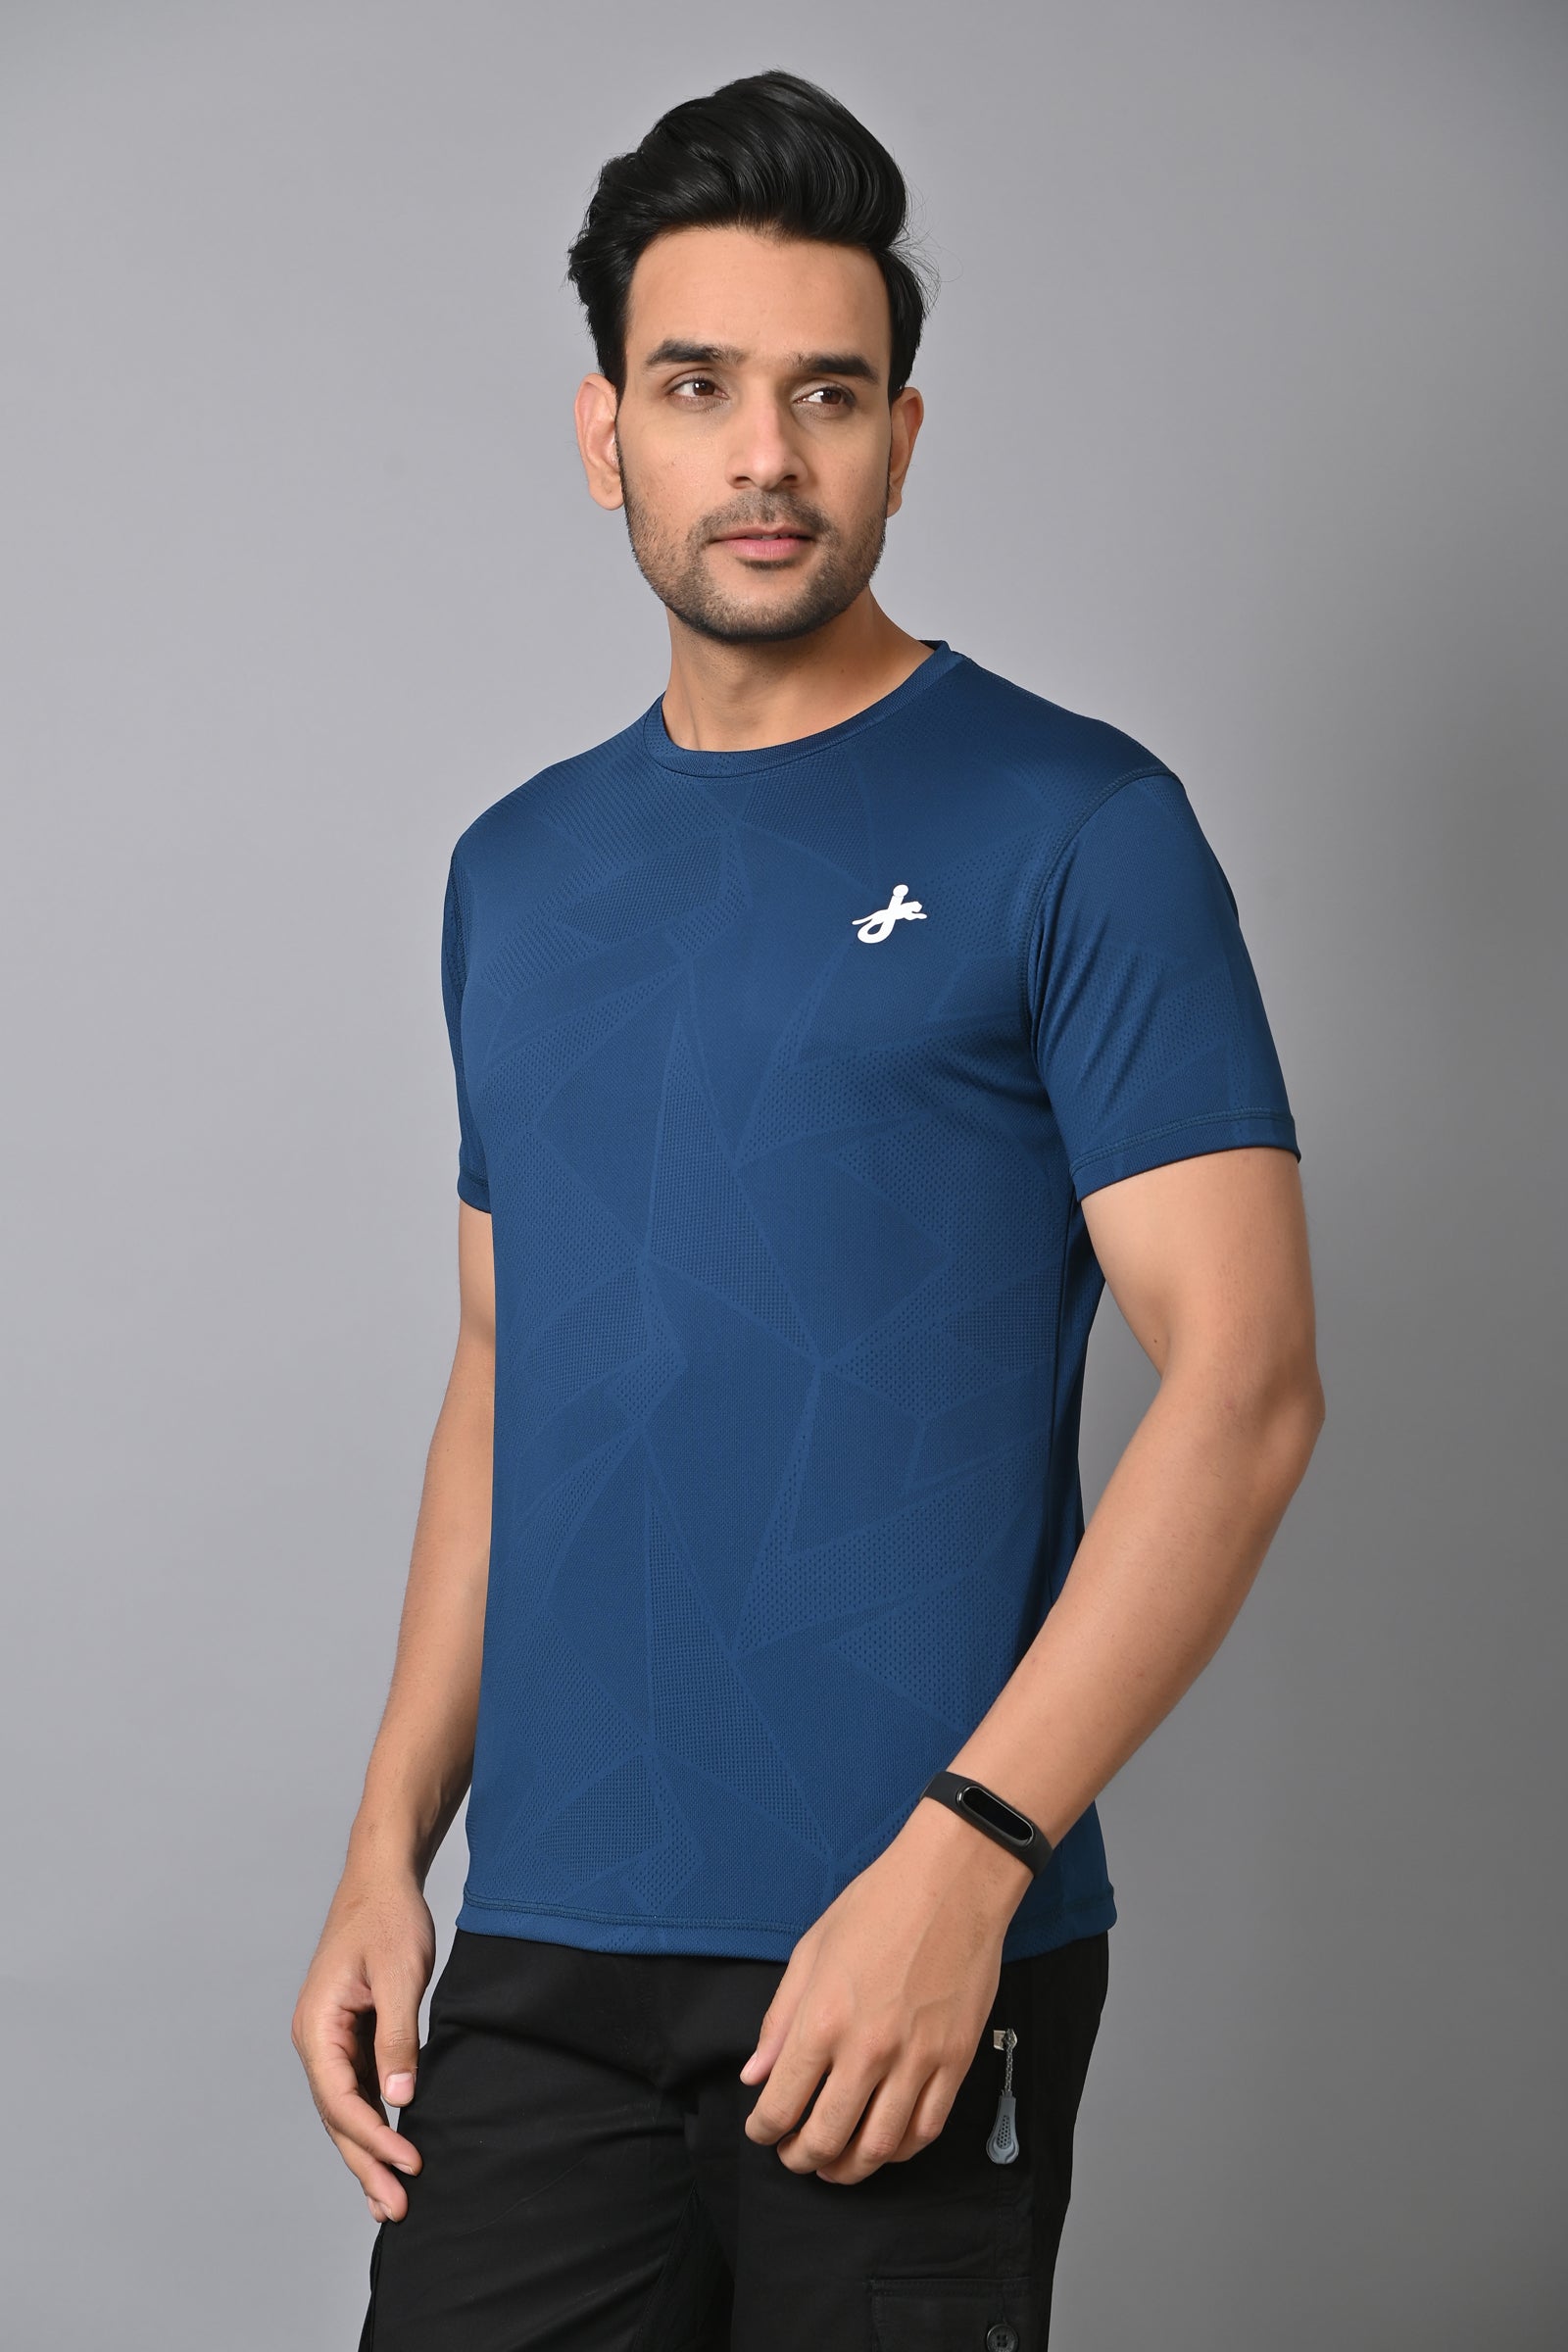 Jaguro Men's Sports T-Shirt Blue